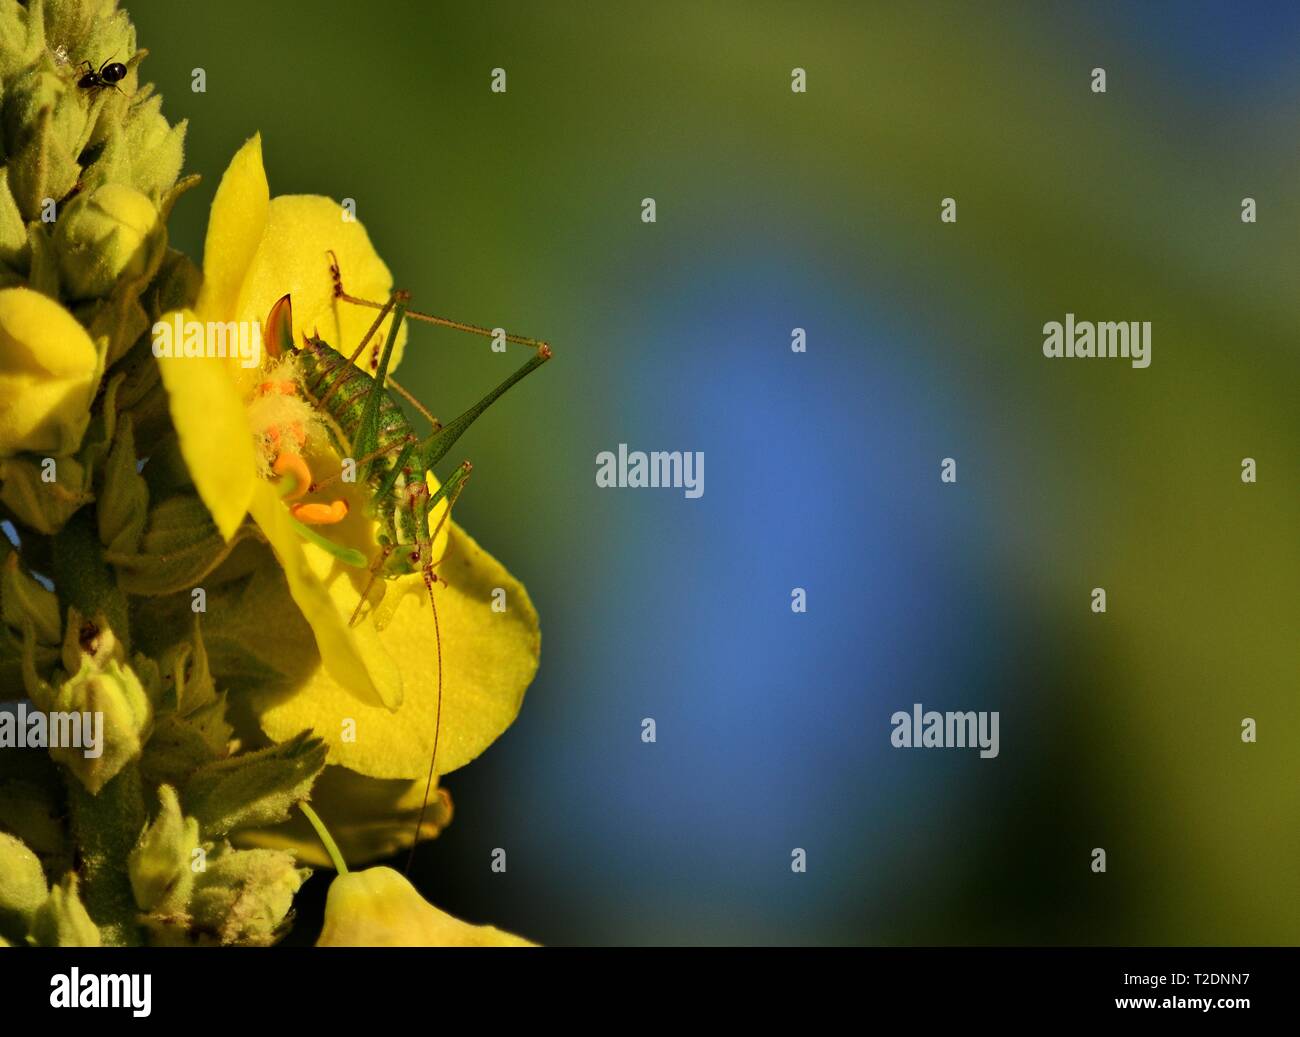 Saddle-backed bush cricket - Ephippiger ephippiger on yellow flower Stock Photo